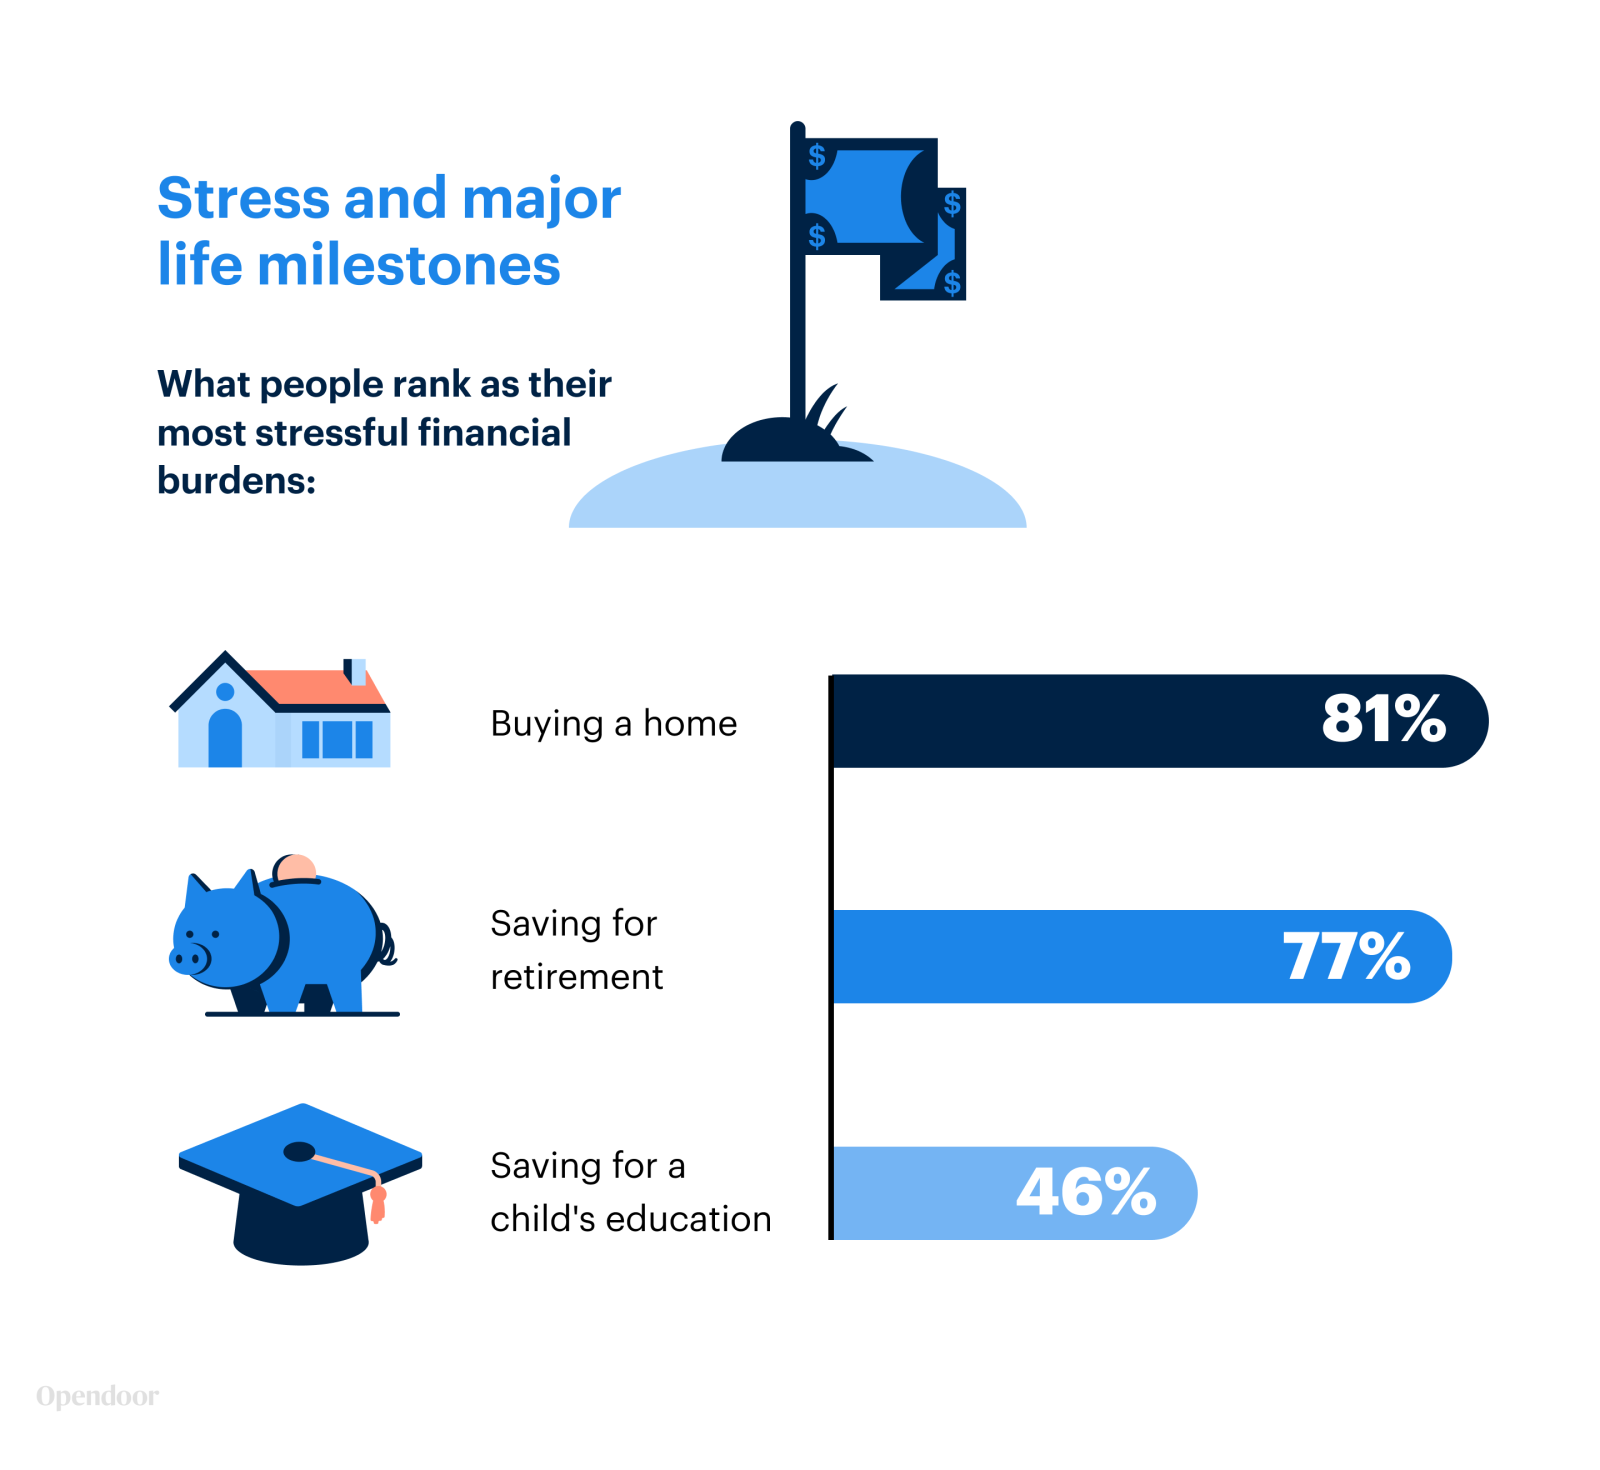 Stress and major milestones | Opendoor Financial Wellness Study